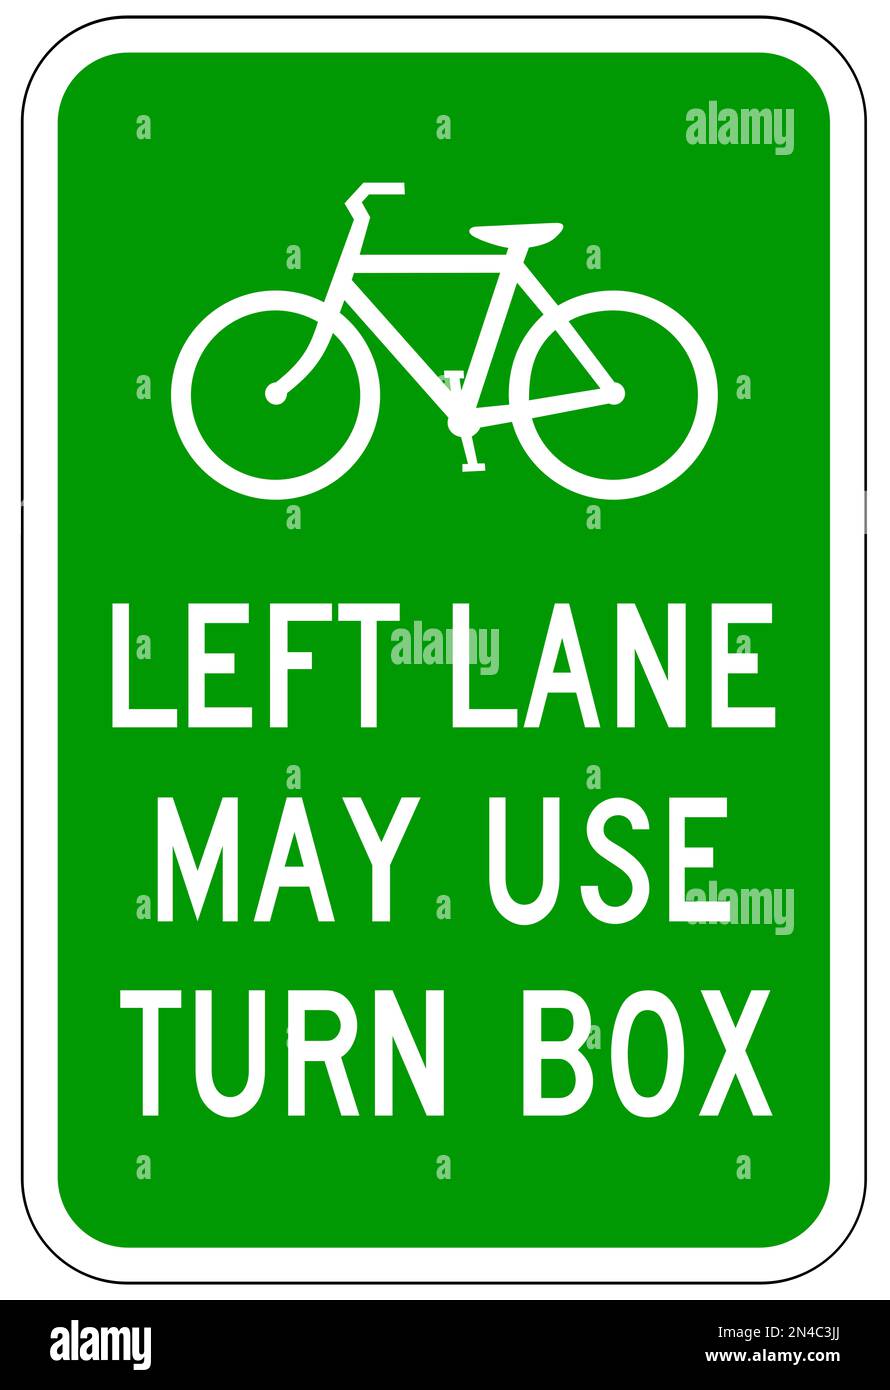 Left lane may use turn box sign Stock Photo